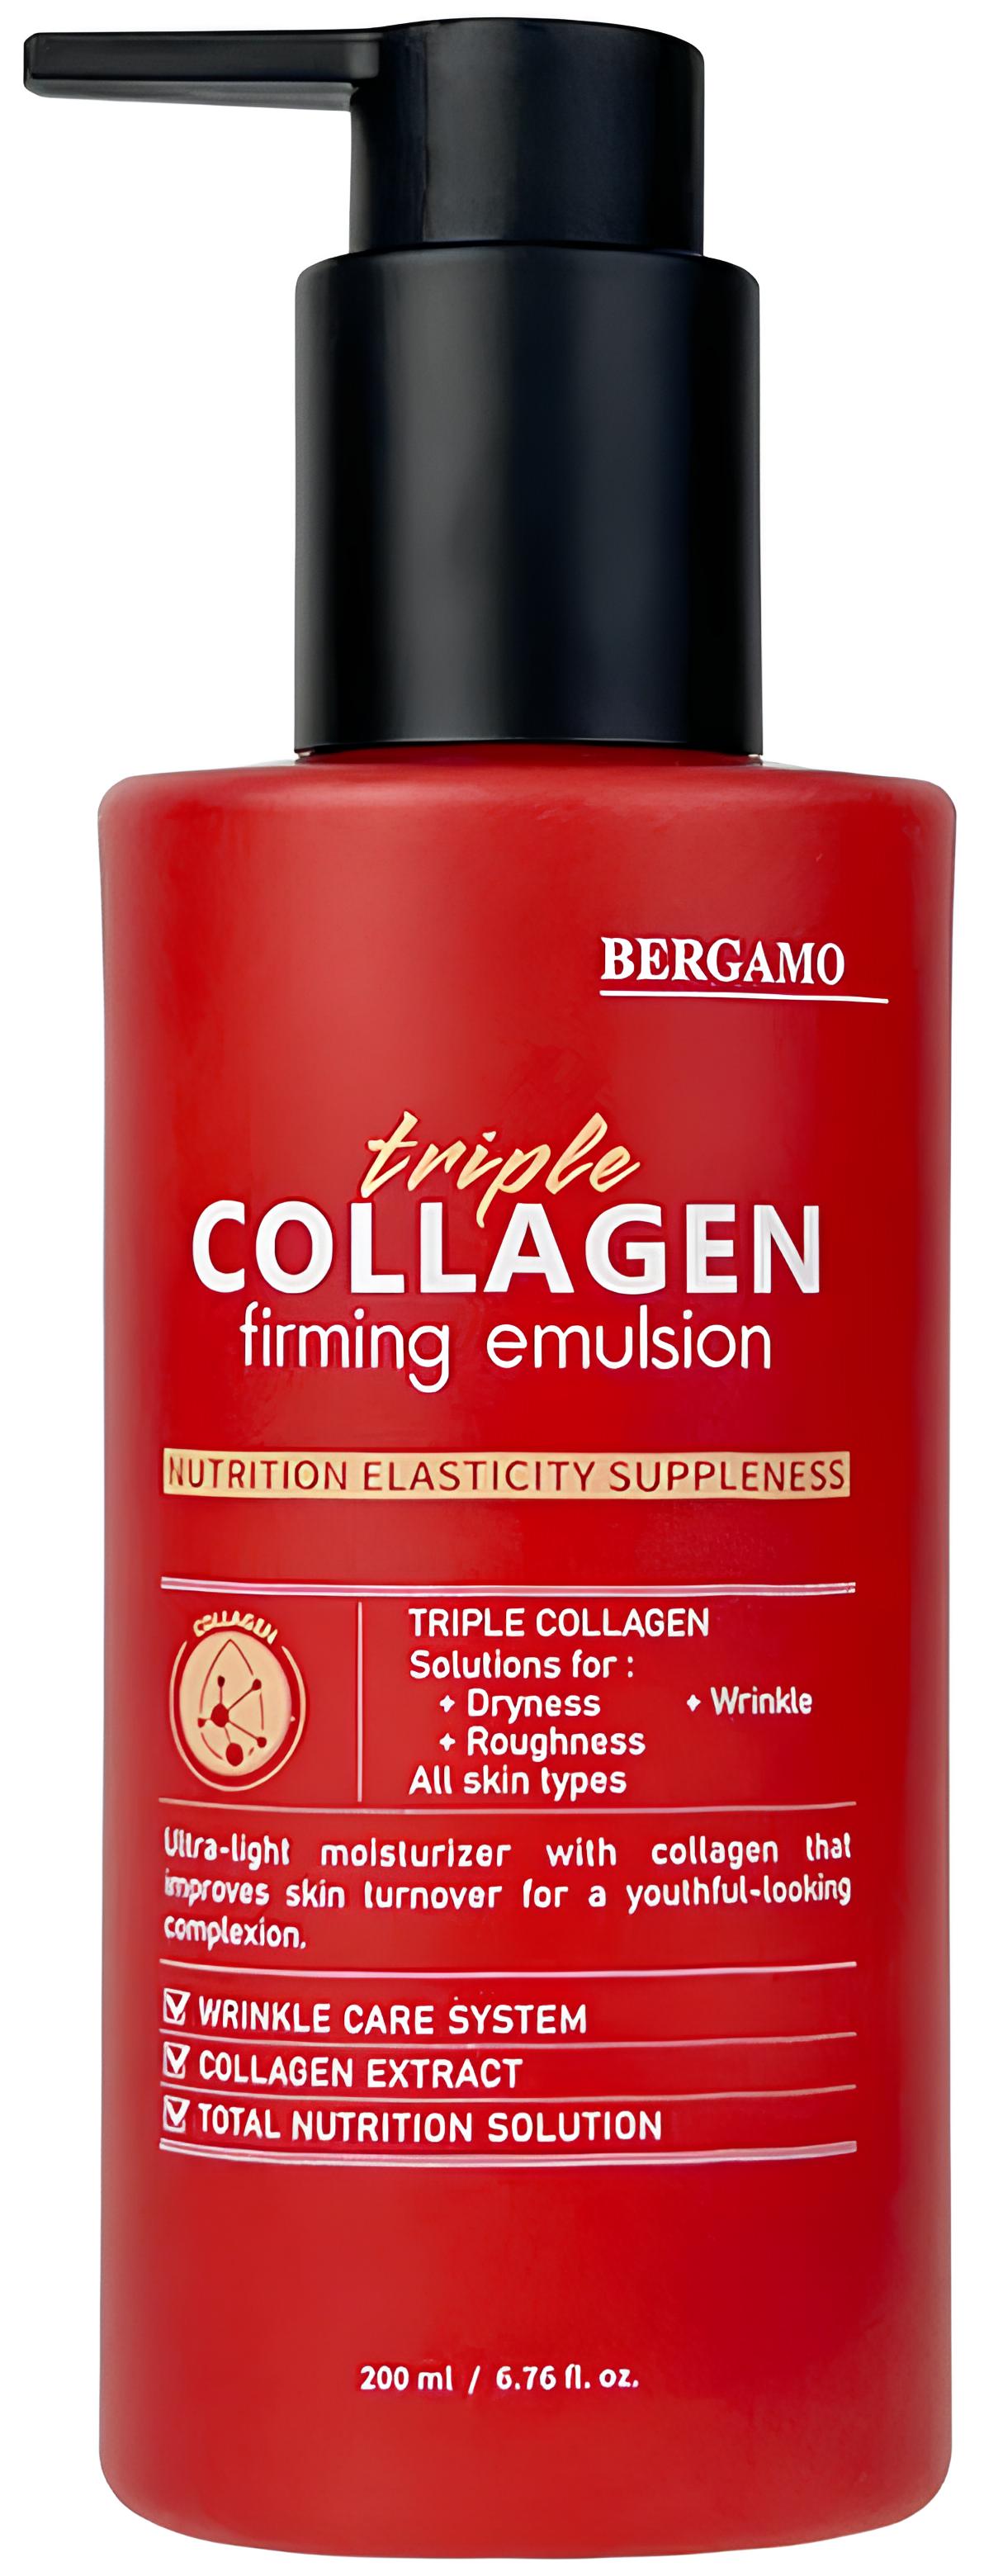 Укрепляющая эмульсия с тройным коллагеном Bergamo Triple Collagen Firming Emulsion 200 мл juleju эликсир для интимного ухода triple pleasure тропический коктейль 130